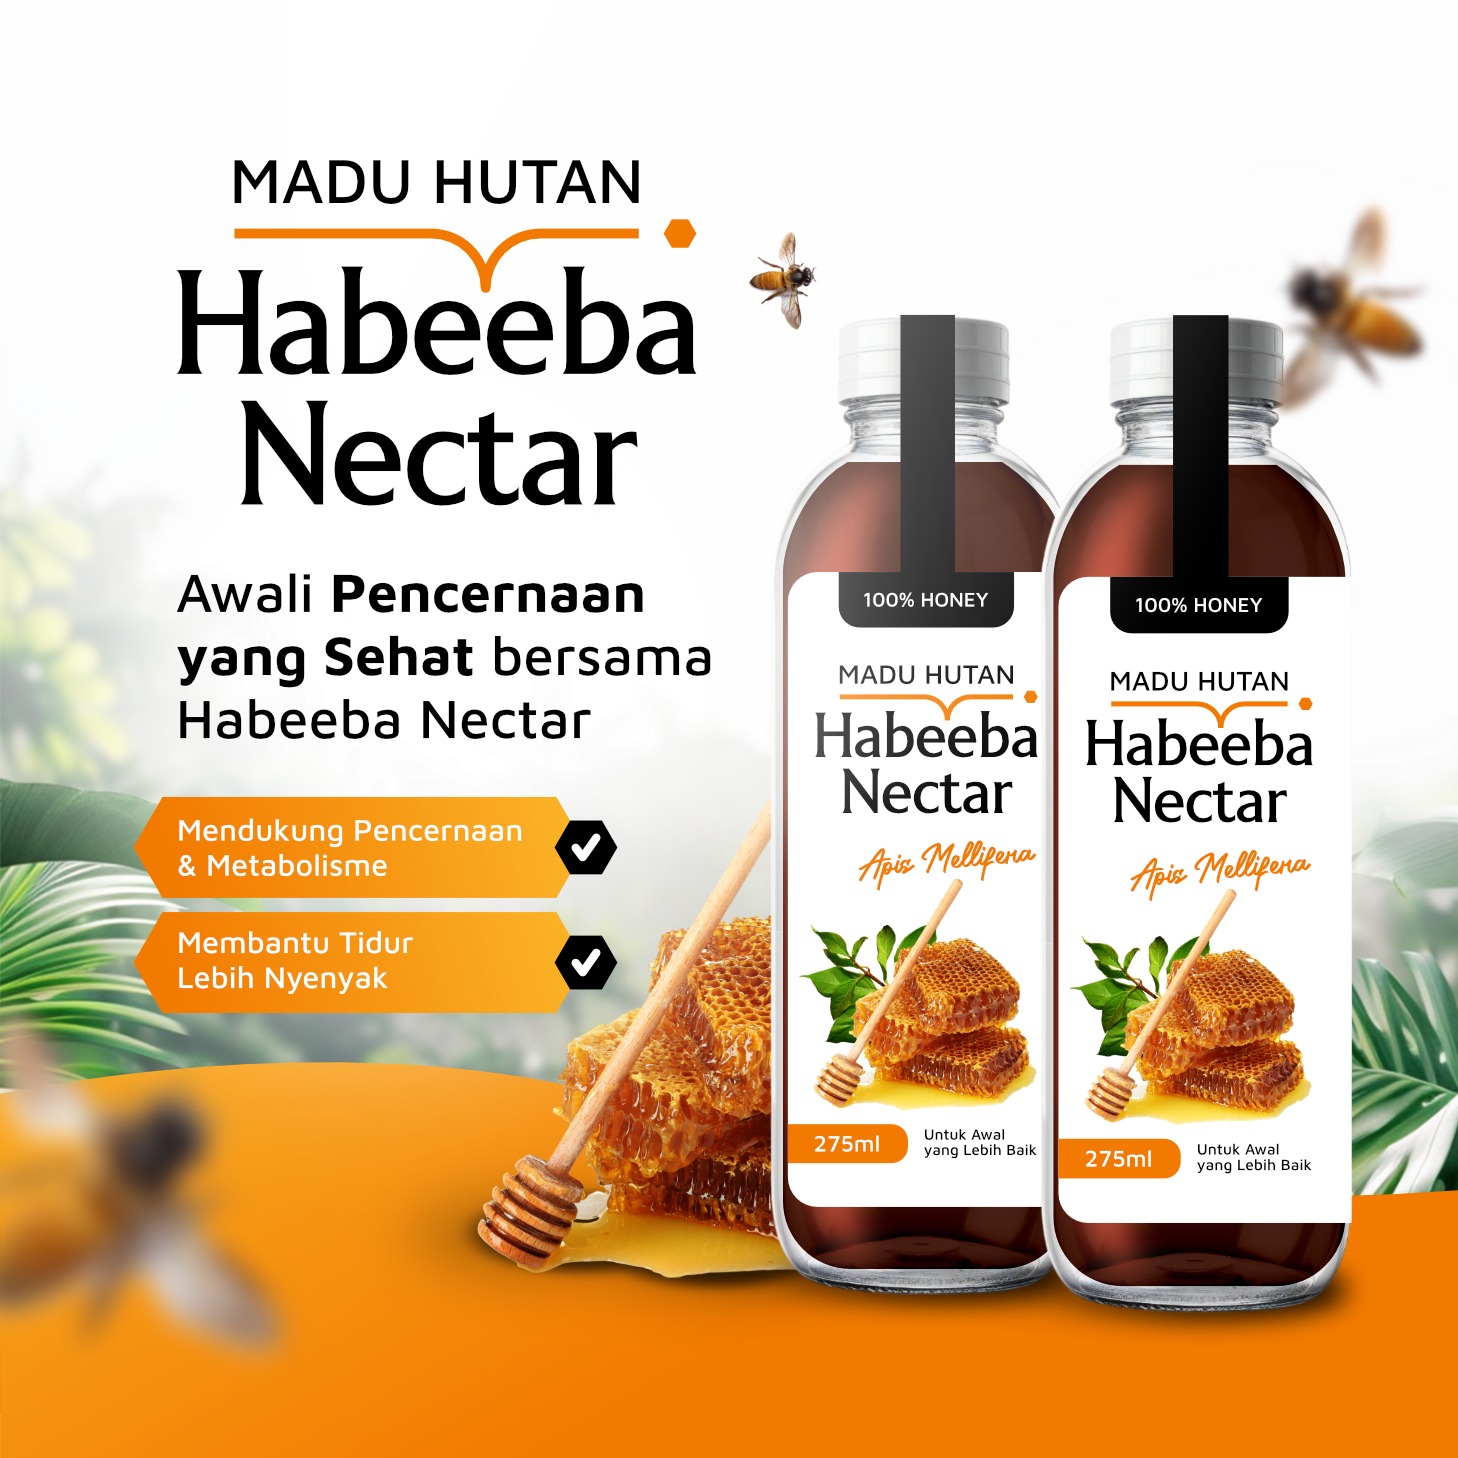 Habeeba Nectar – Untuk awal yang lebih baik